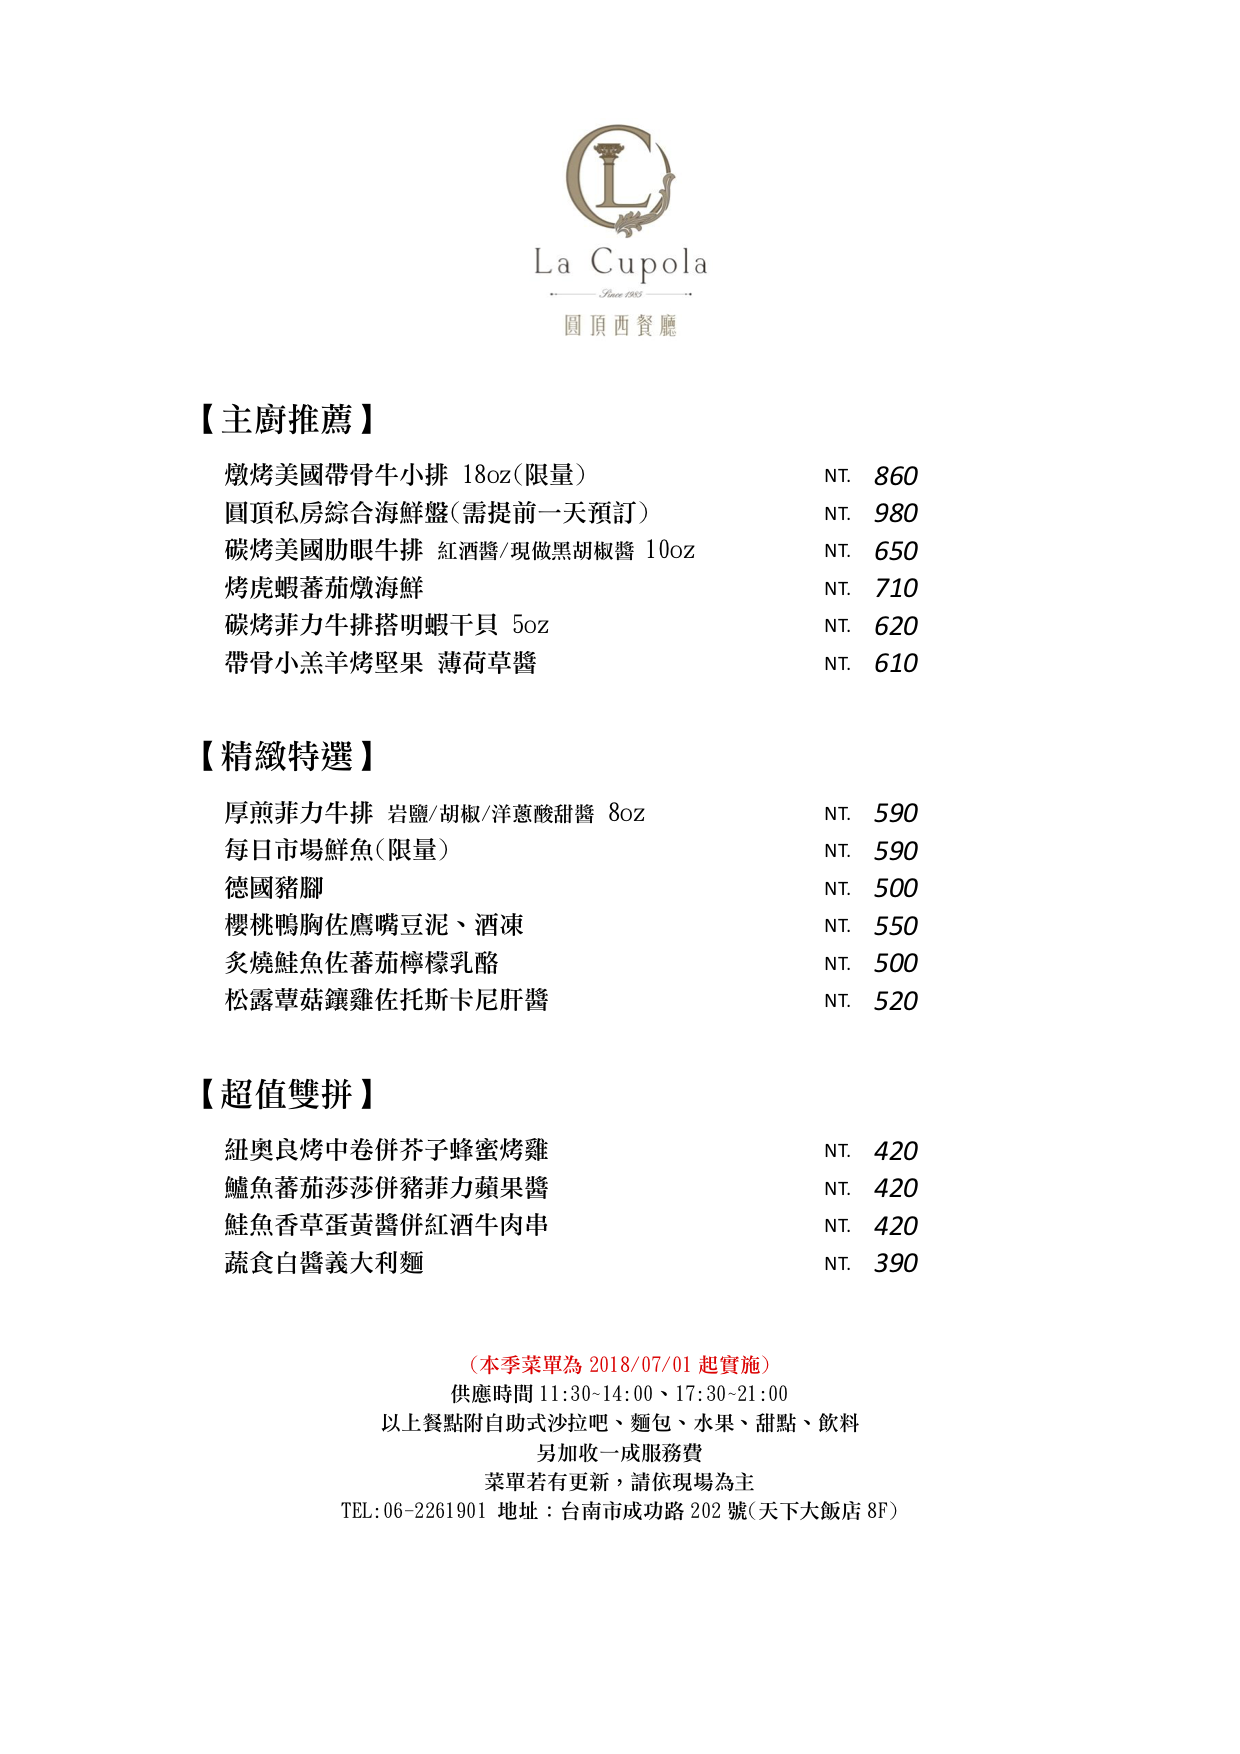 台南北區餐廳推薦 點主餐享無限供應自助吧，適合聚餐成功路平價「圓頂西餐廳」，在天下大飯店8F。